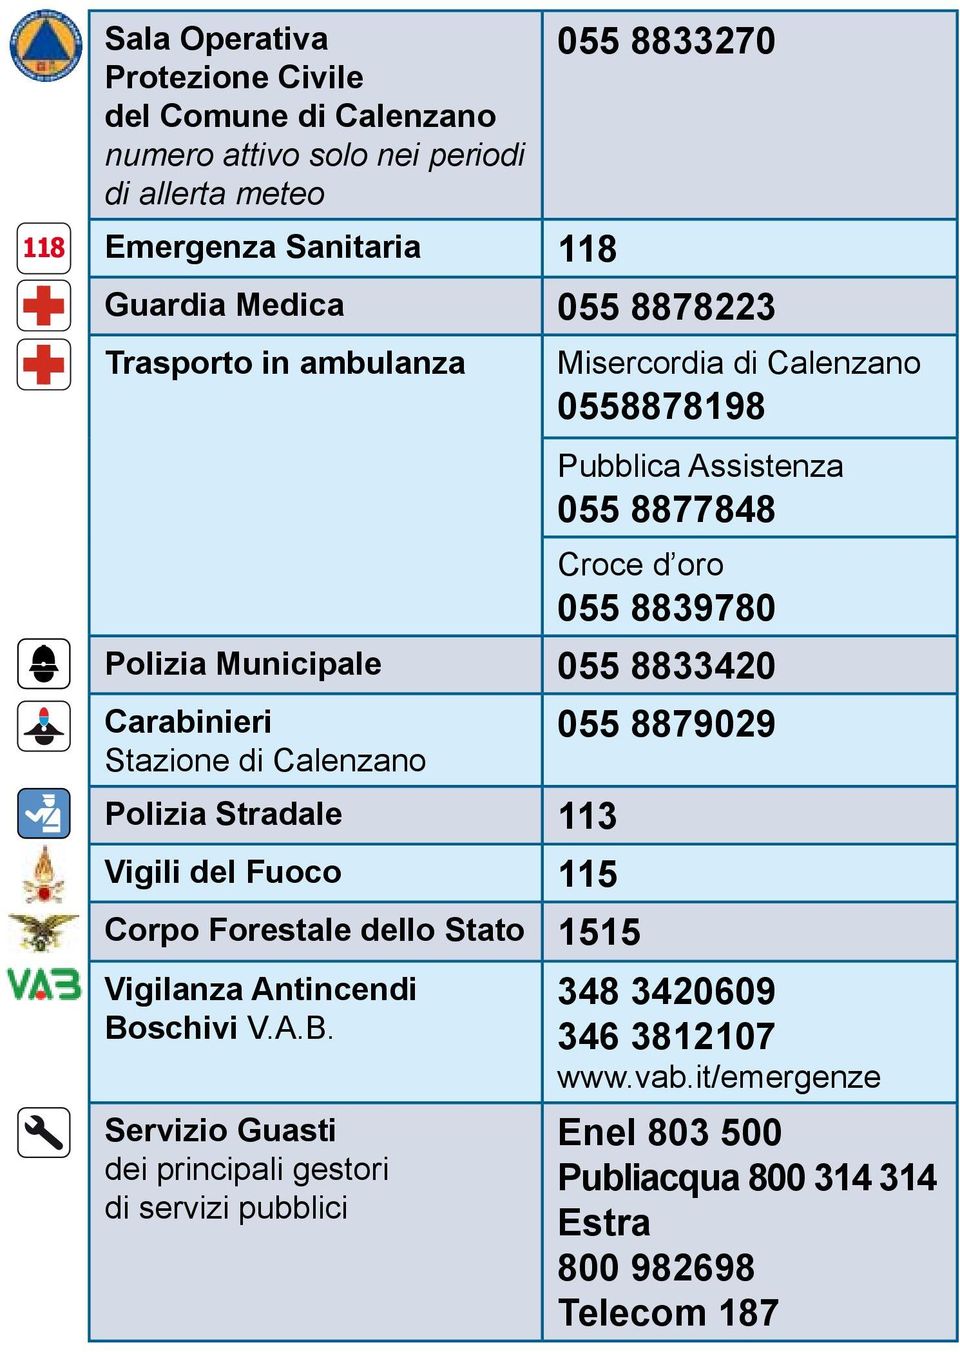 Carabinieri 055 8879029 Stazione di Calenzano Polizia Stradale 113 Vigili del Fuoco 115 Corpo Forestale dello Stato 1515 Vigilanza Antincendi 348 3420609